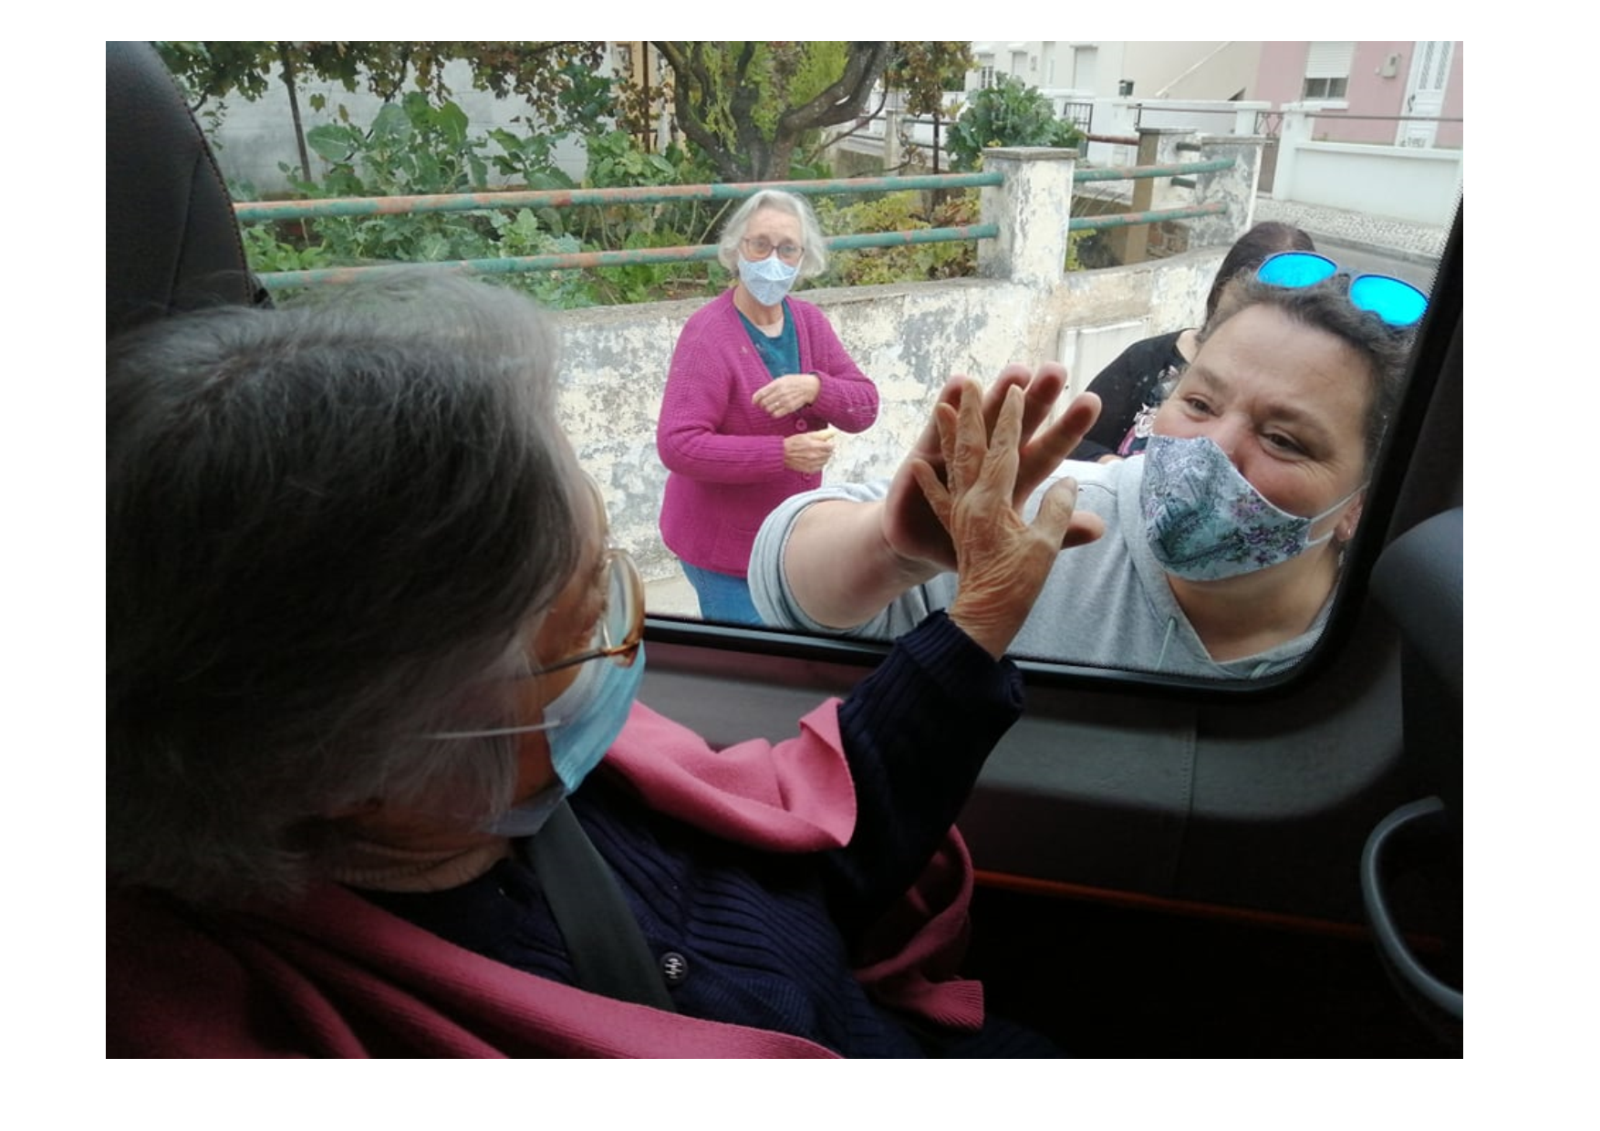 Vila Nova da Barquinha | Reencontros sobre rodas para atenuar saudades